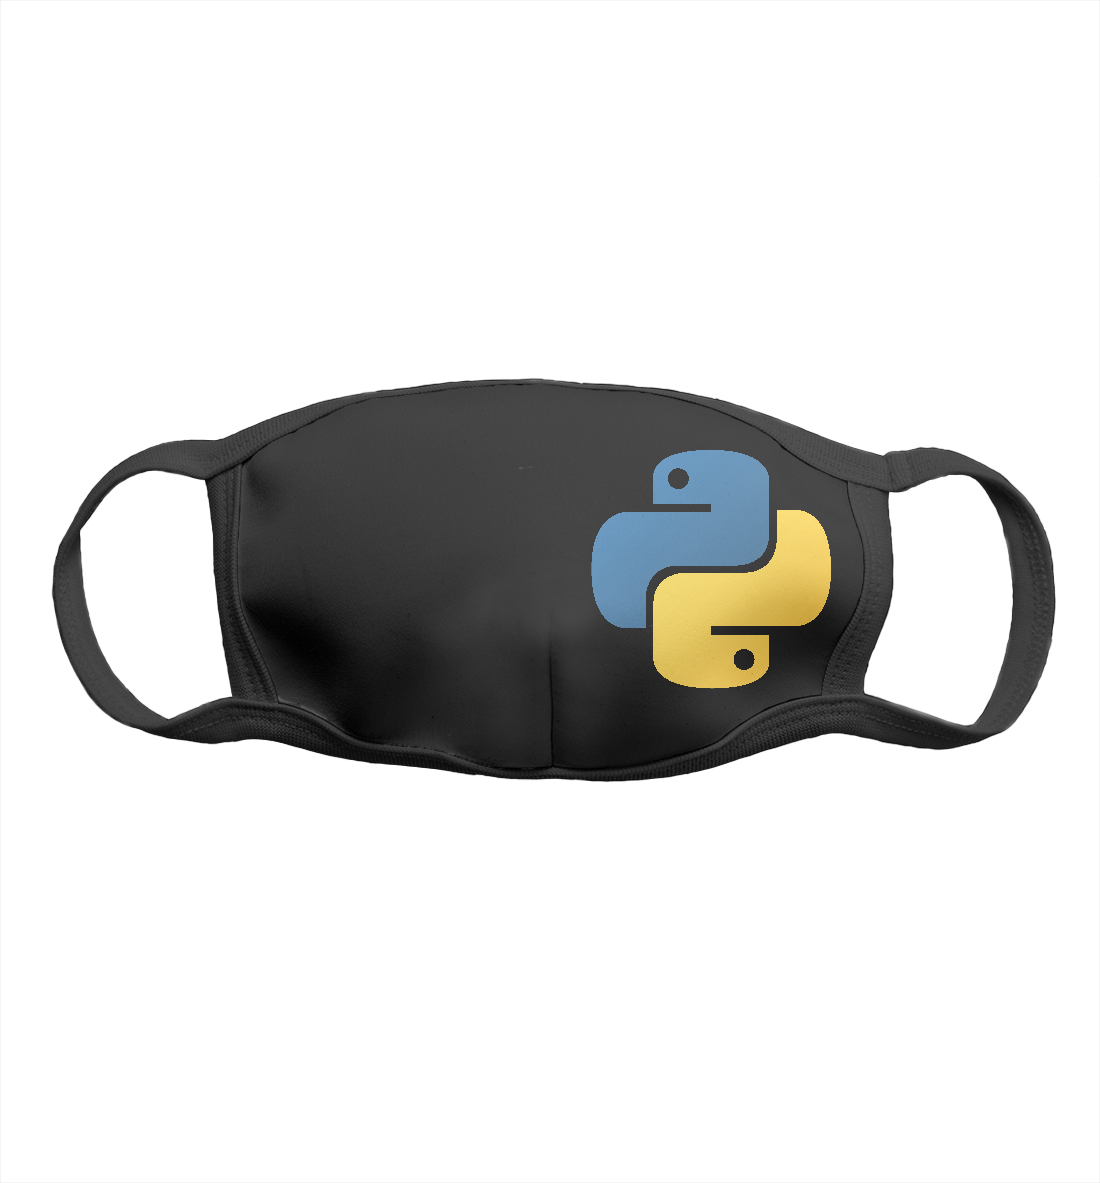 Python masks